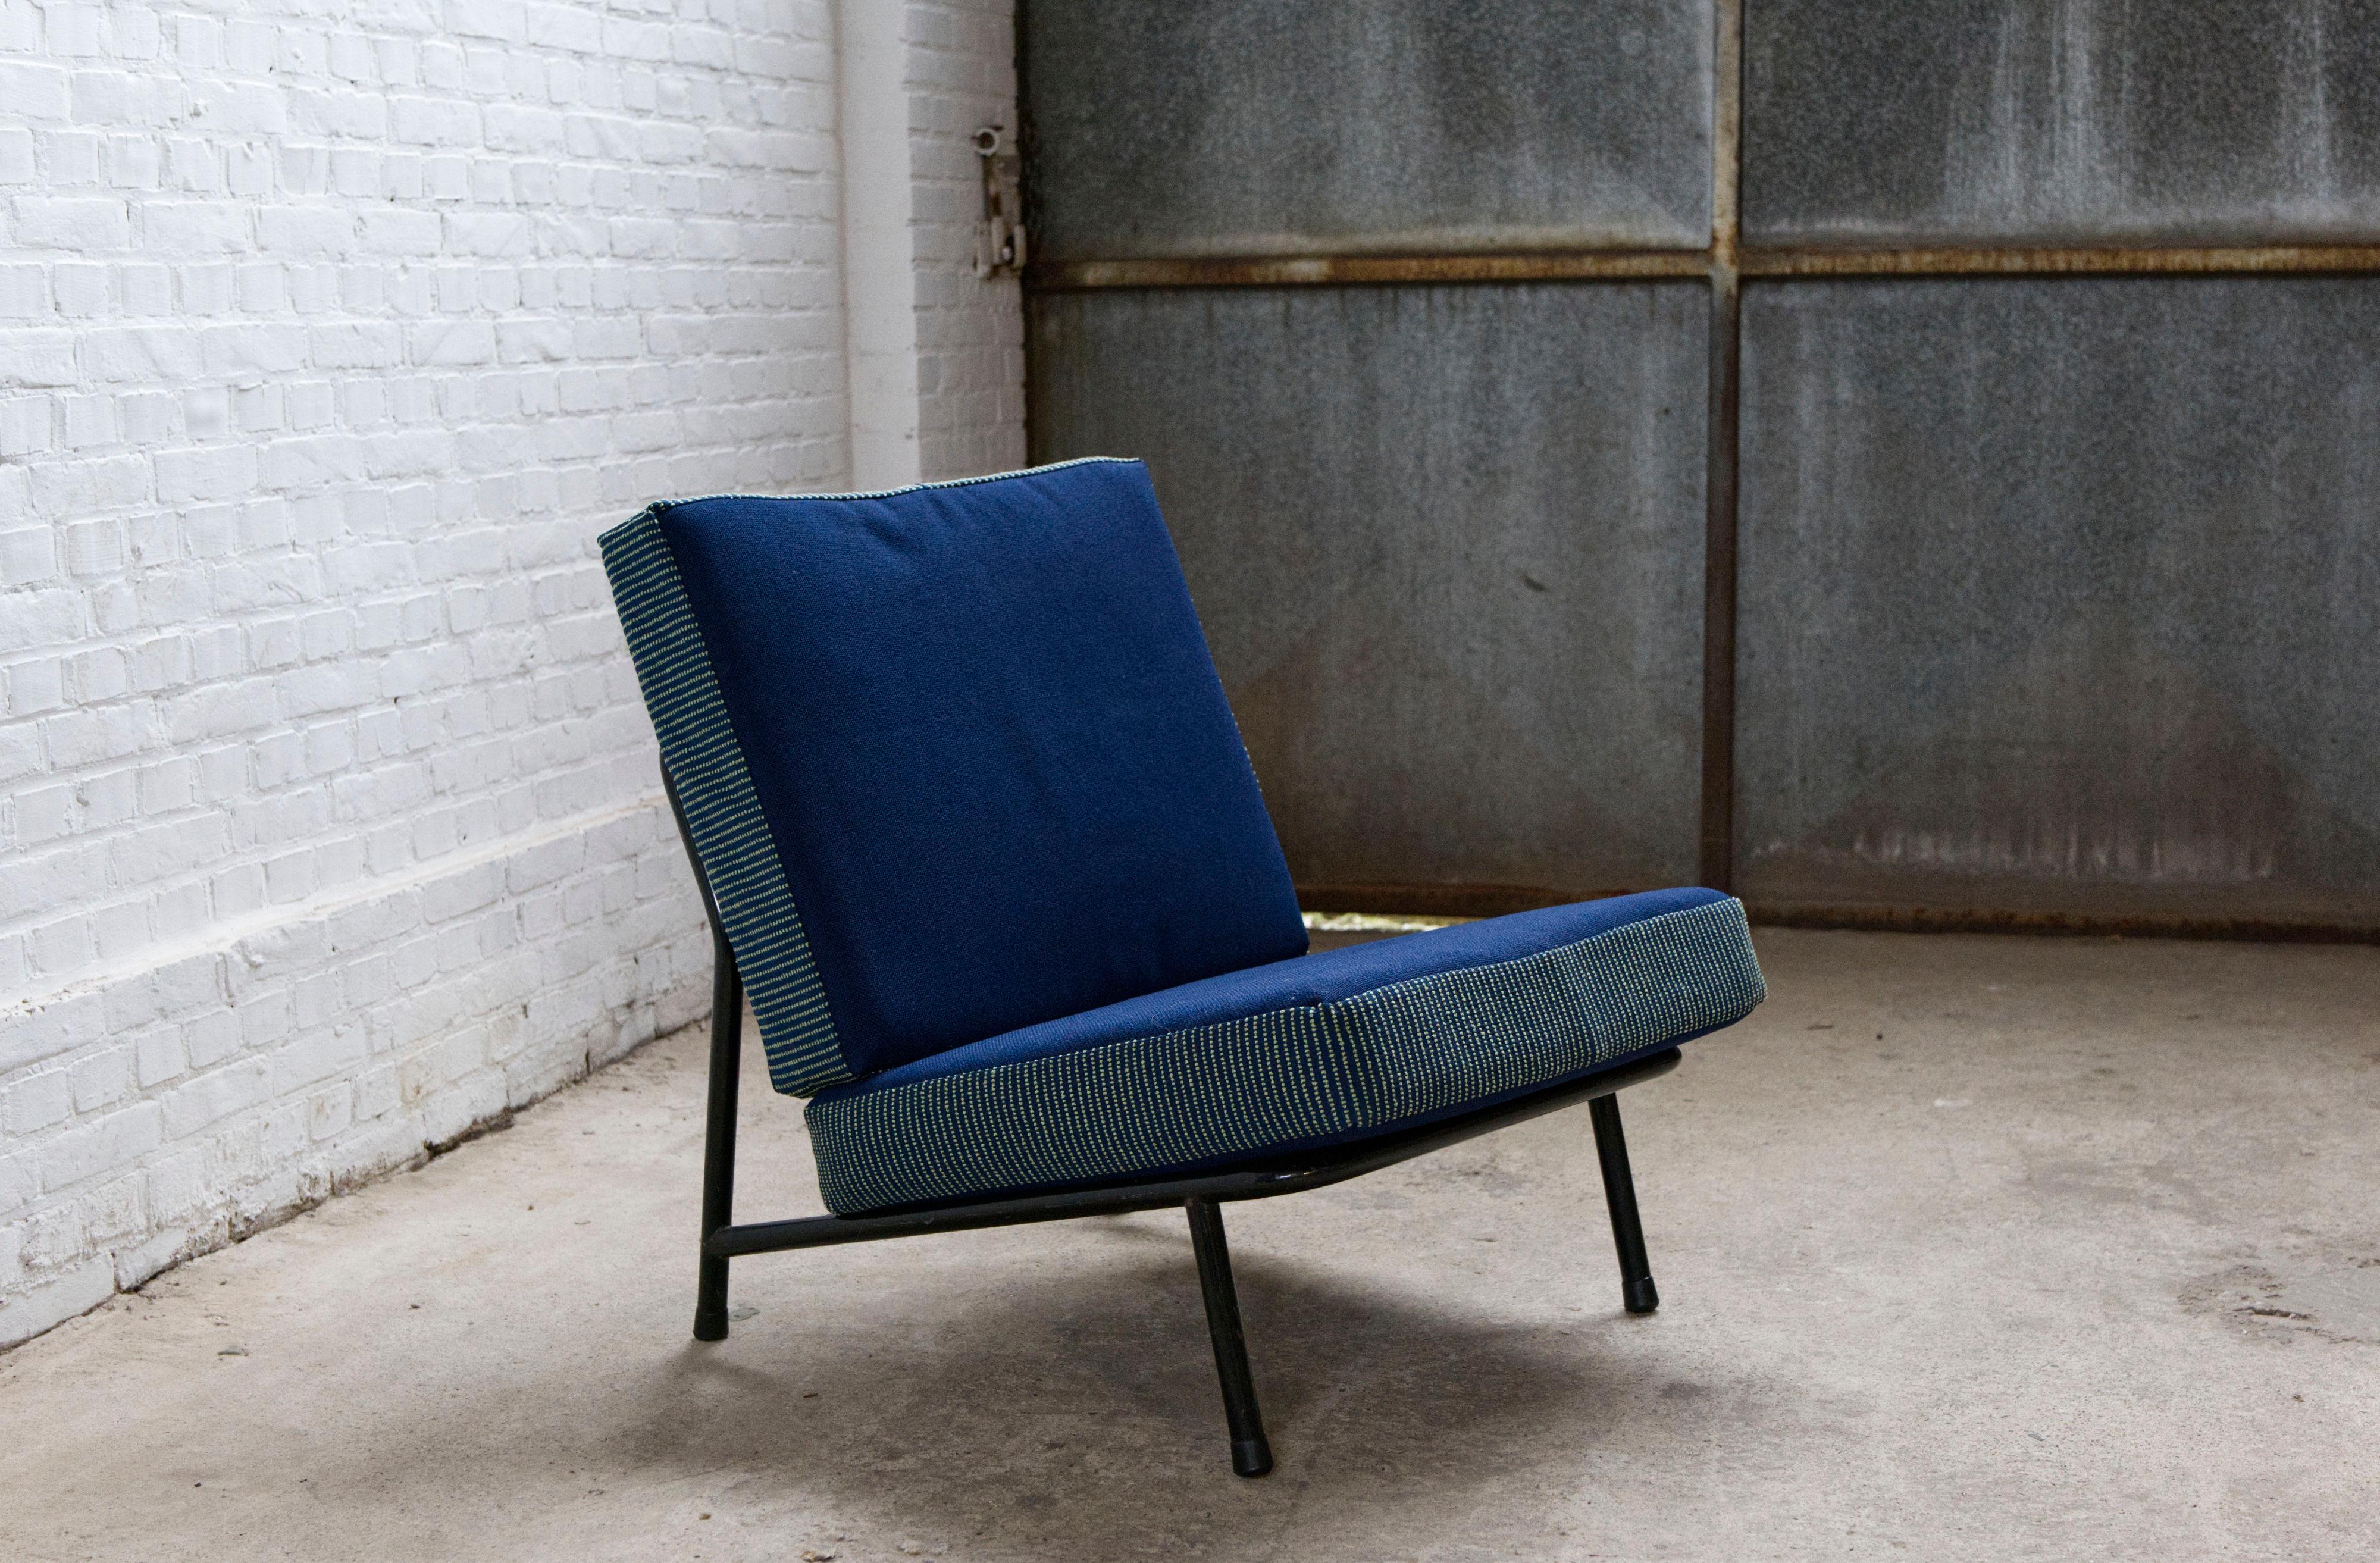 Fauteuil '013' d'Alf Svensson pour Artifort DUX, années 1950

Une chaise longue intemporelle fabriquée par Artifort Dux aux Pays-Bas. Conçu par le designer suédois Alf Svensson. 

Revêtement vintage en tissu de laine bleu, contrasté par des parties